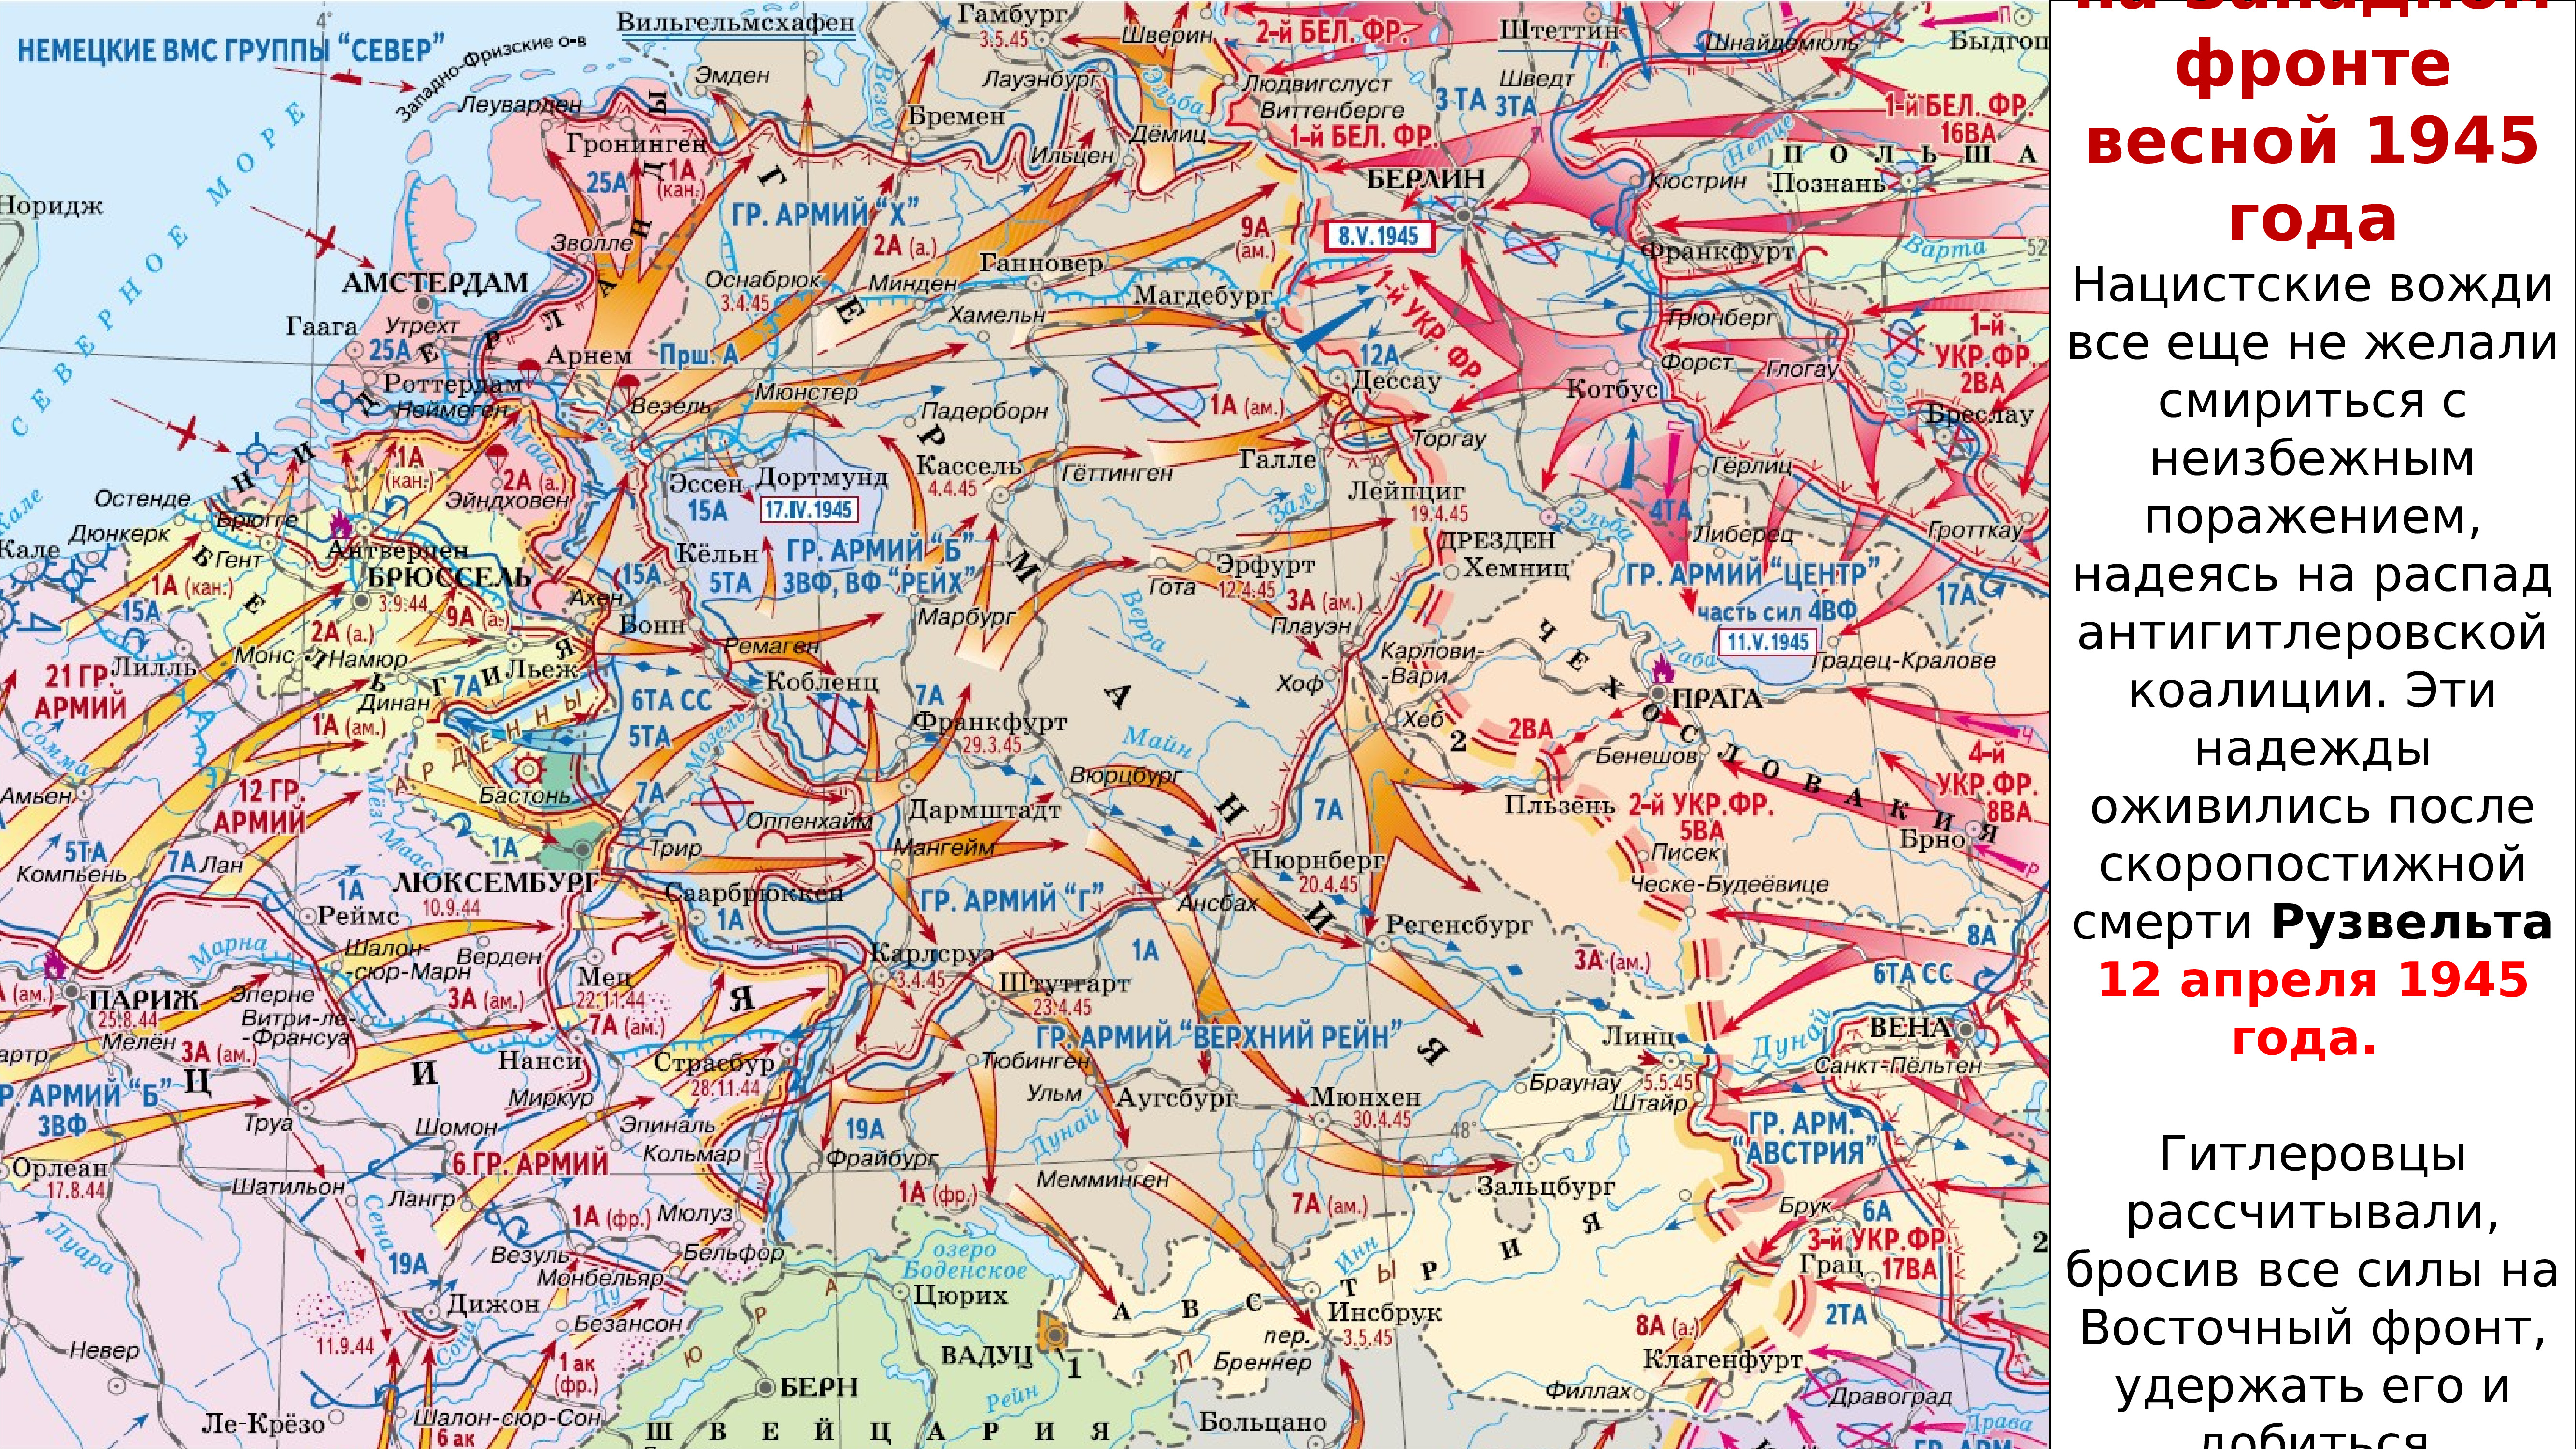 Берлин 5 мая военно фронтов. Германия в апреле 1945 года карта. Центрально европейская операция 1945. Пражская операция 1945 карта. Освобождение Европы карта 1945.